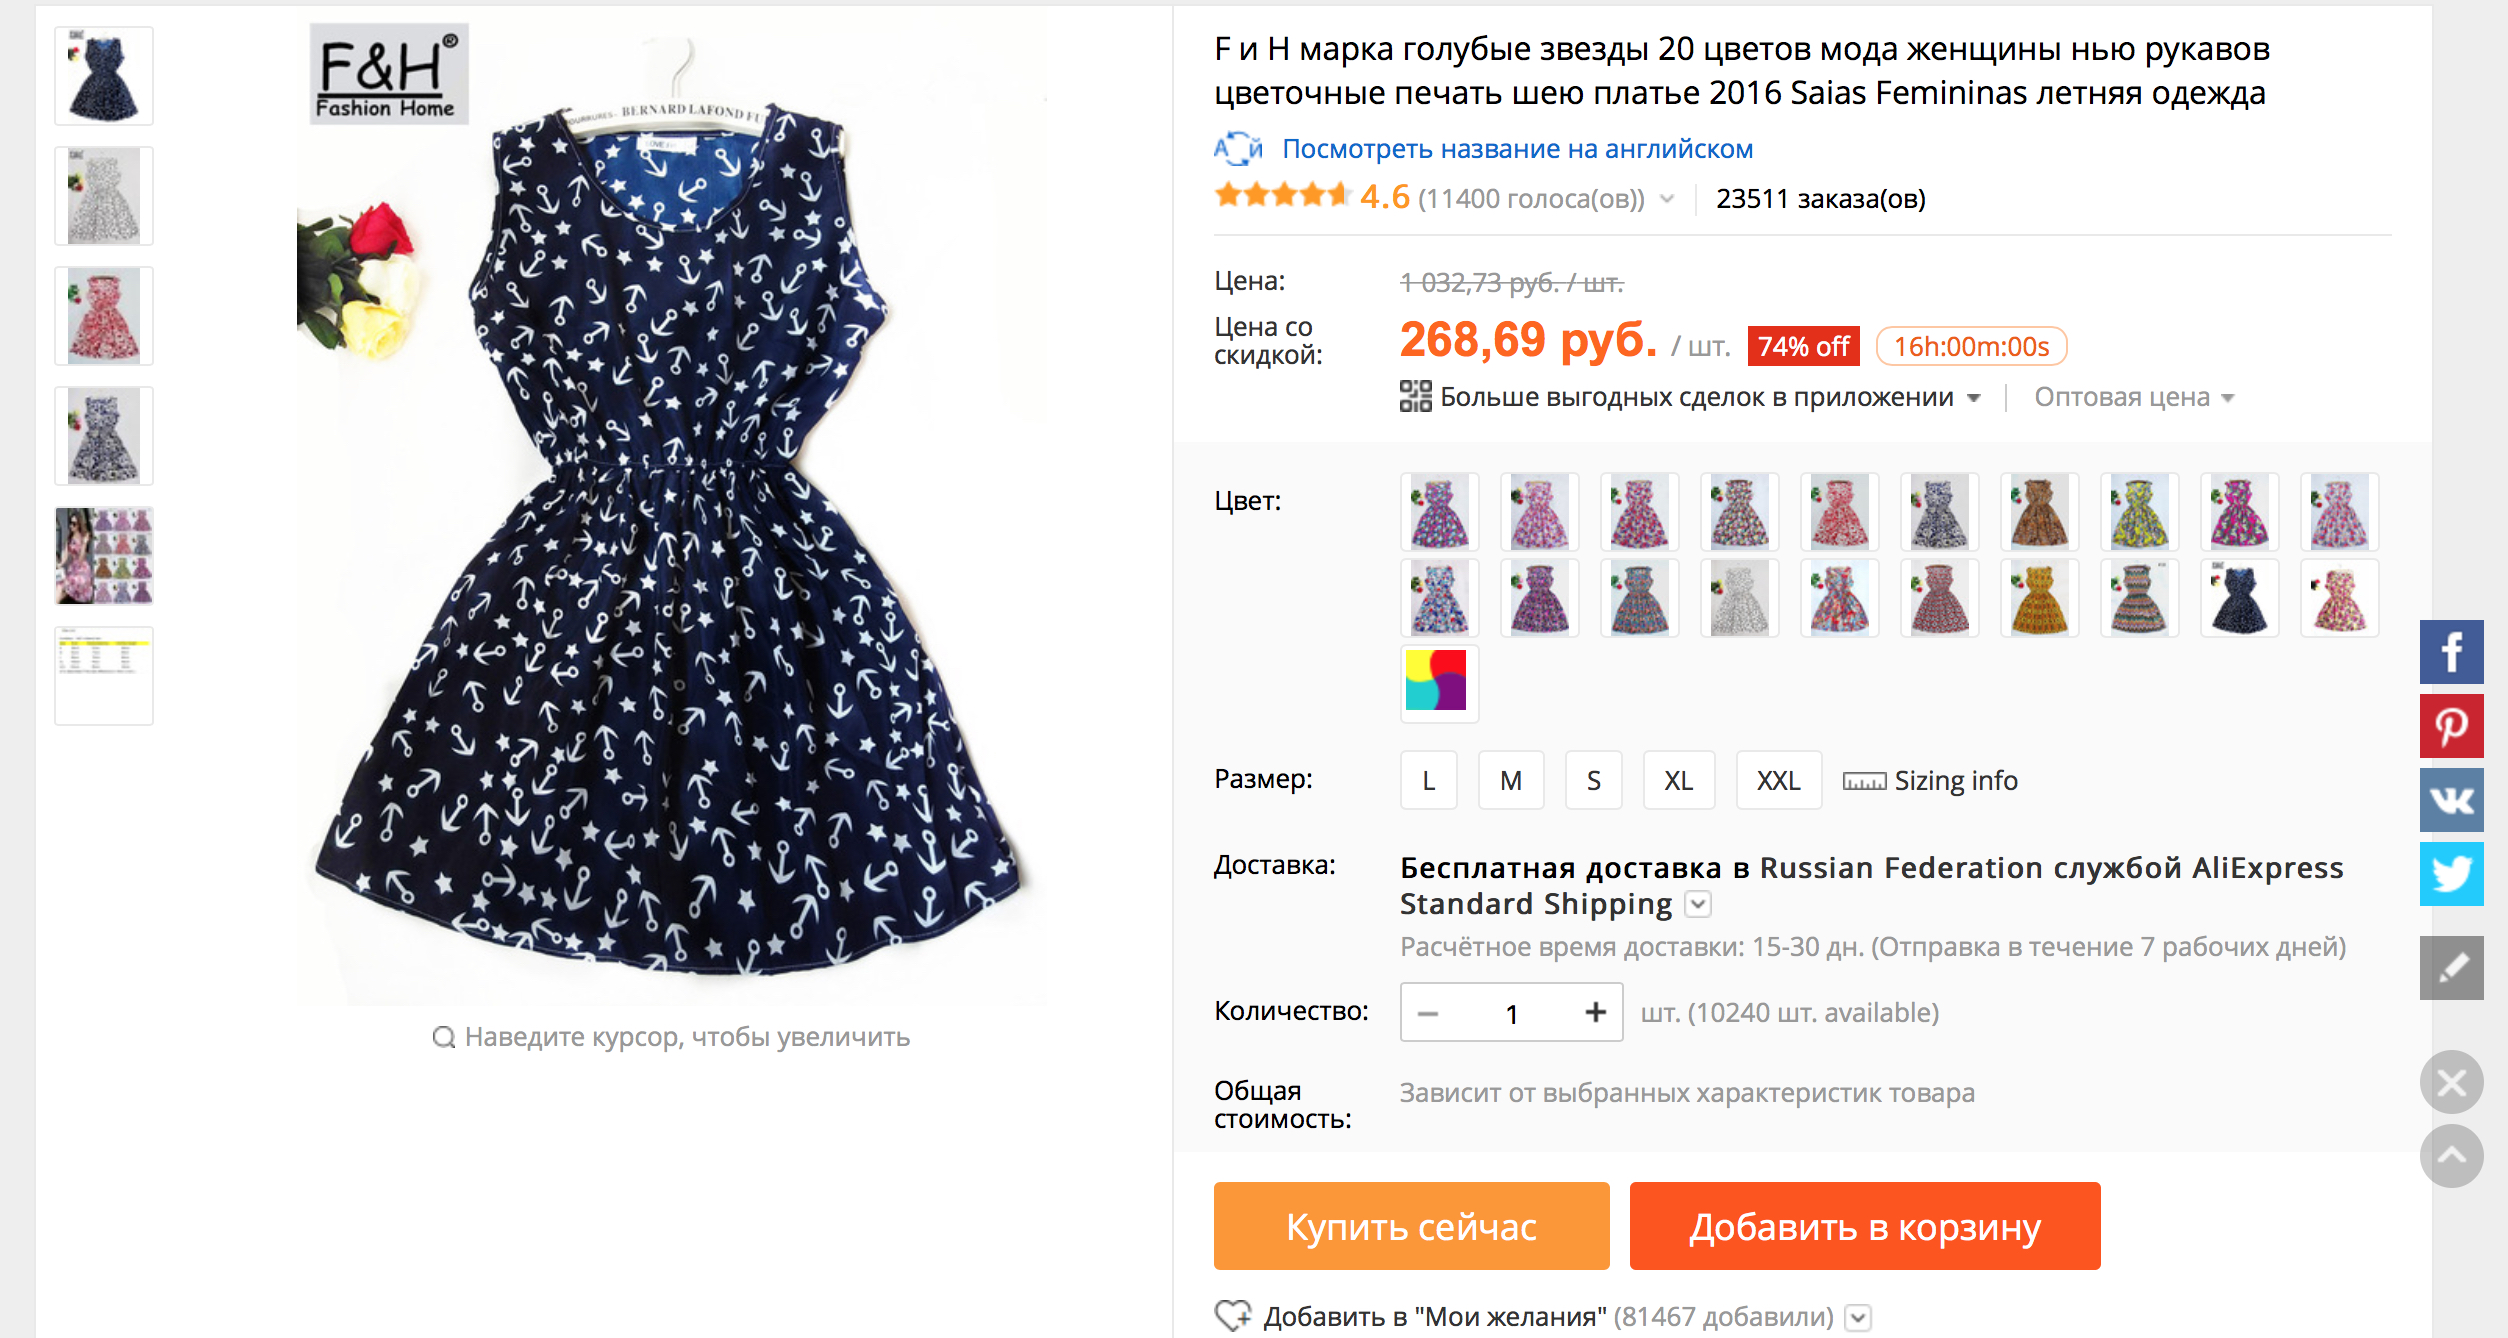 Платье за 280 рублей купили больше 23000 раз